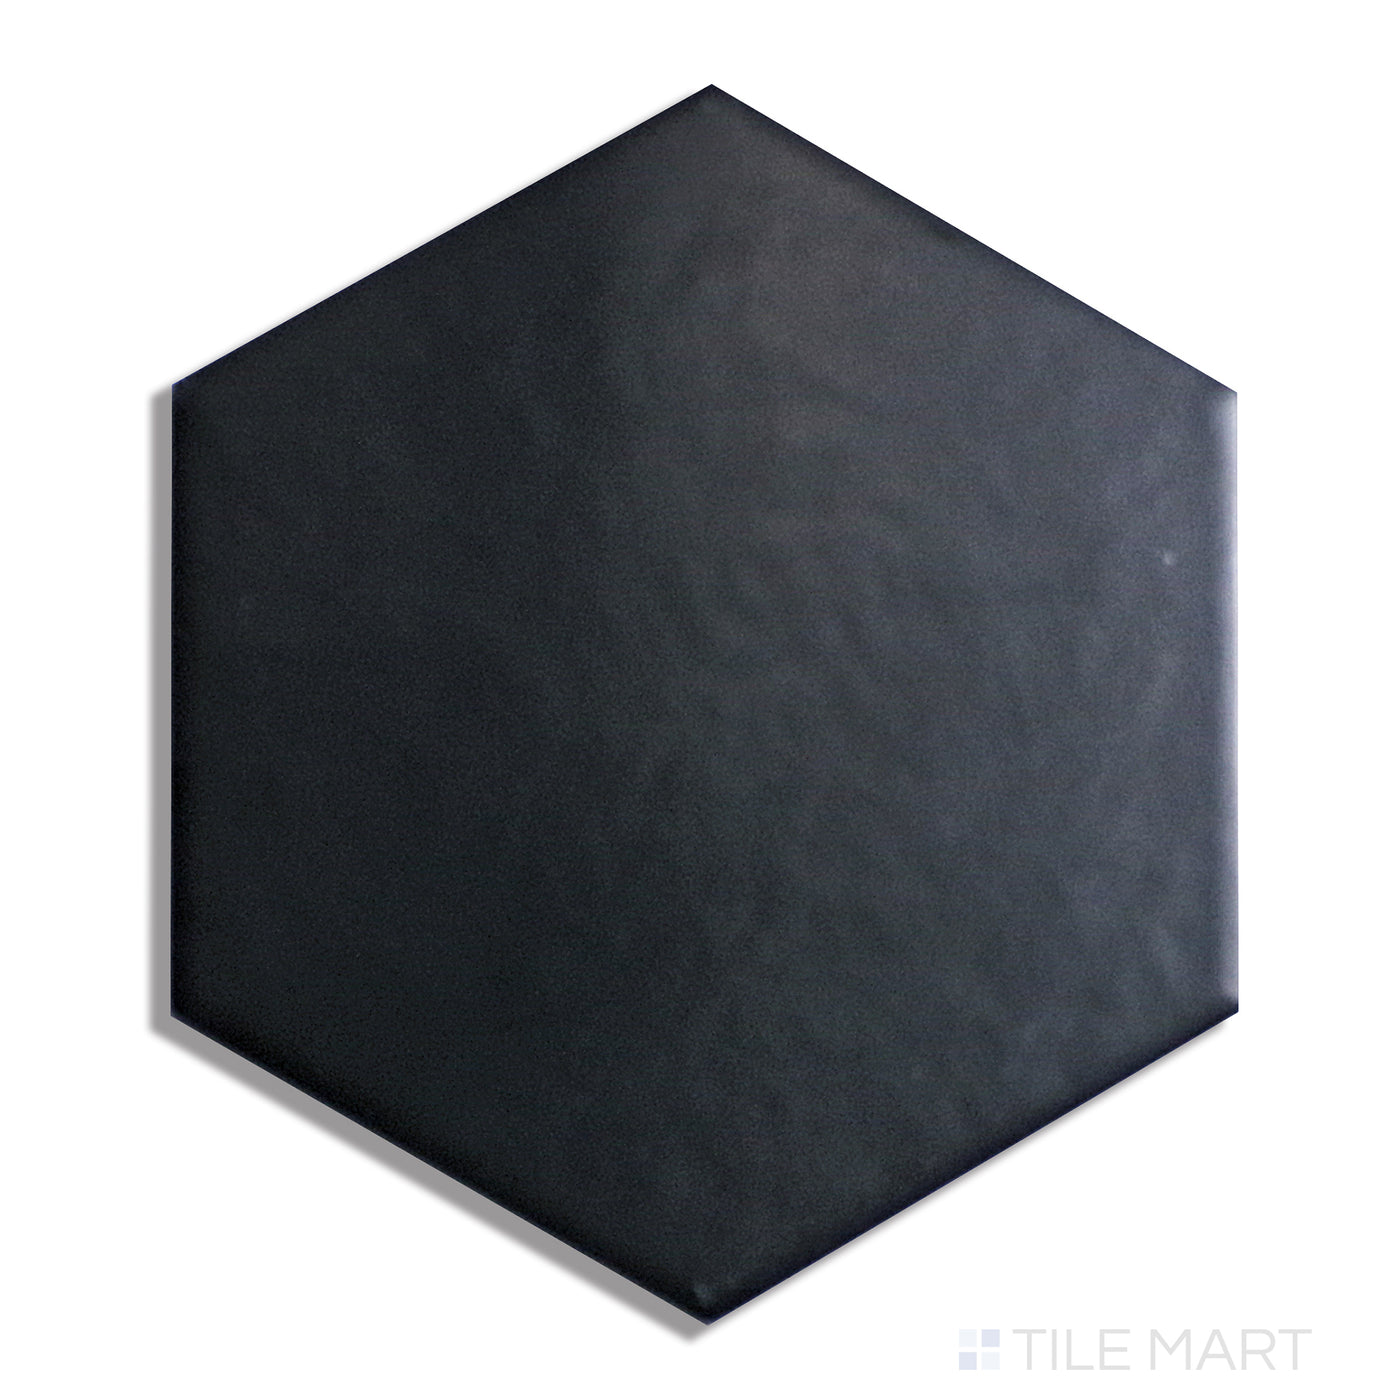 Hexatile Porcelain Field Tile 8X8 Negro Matte